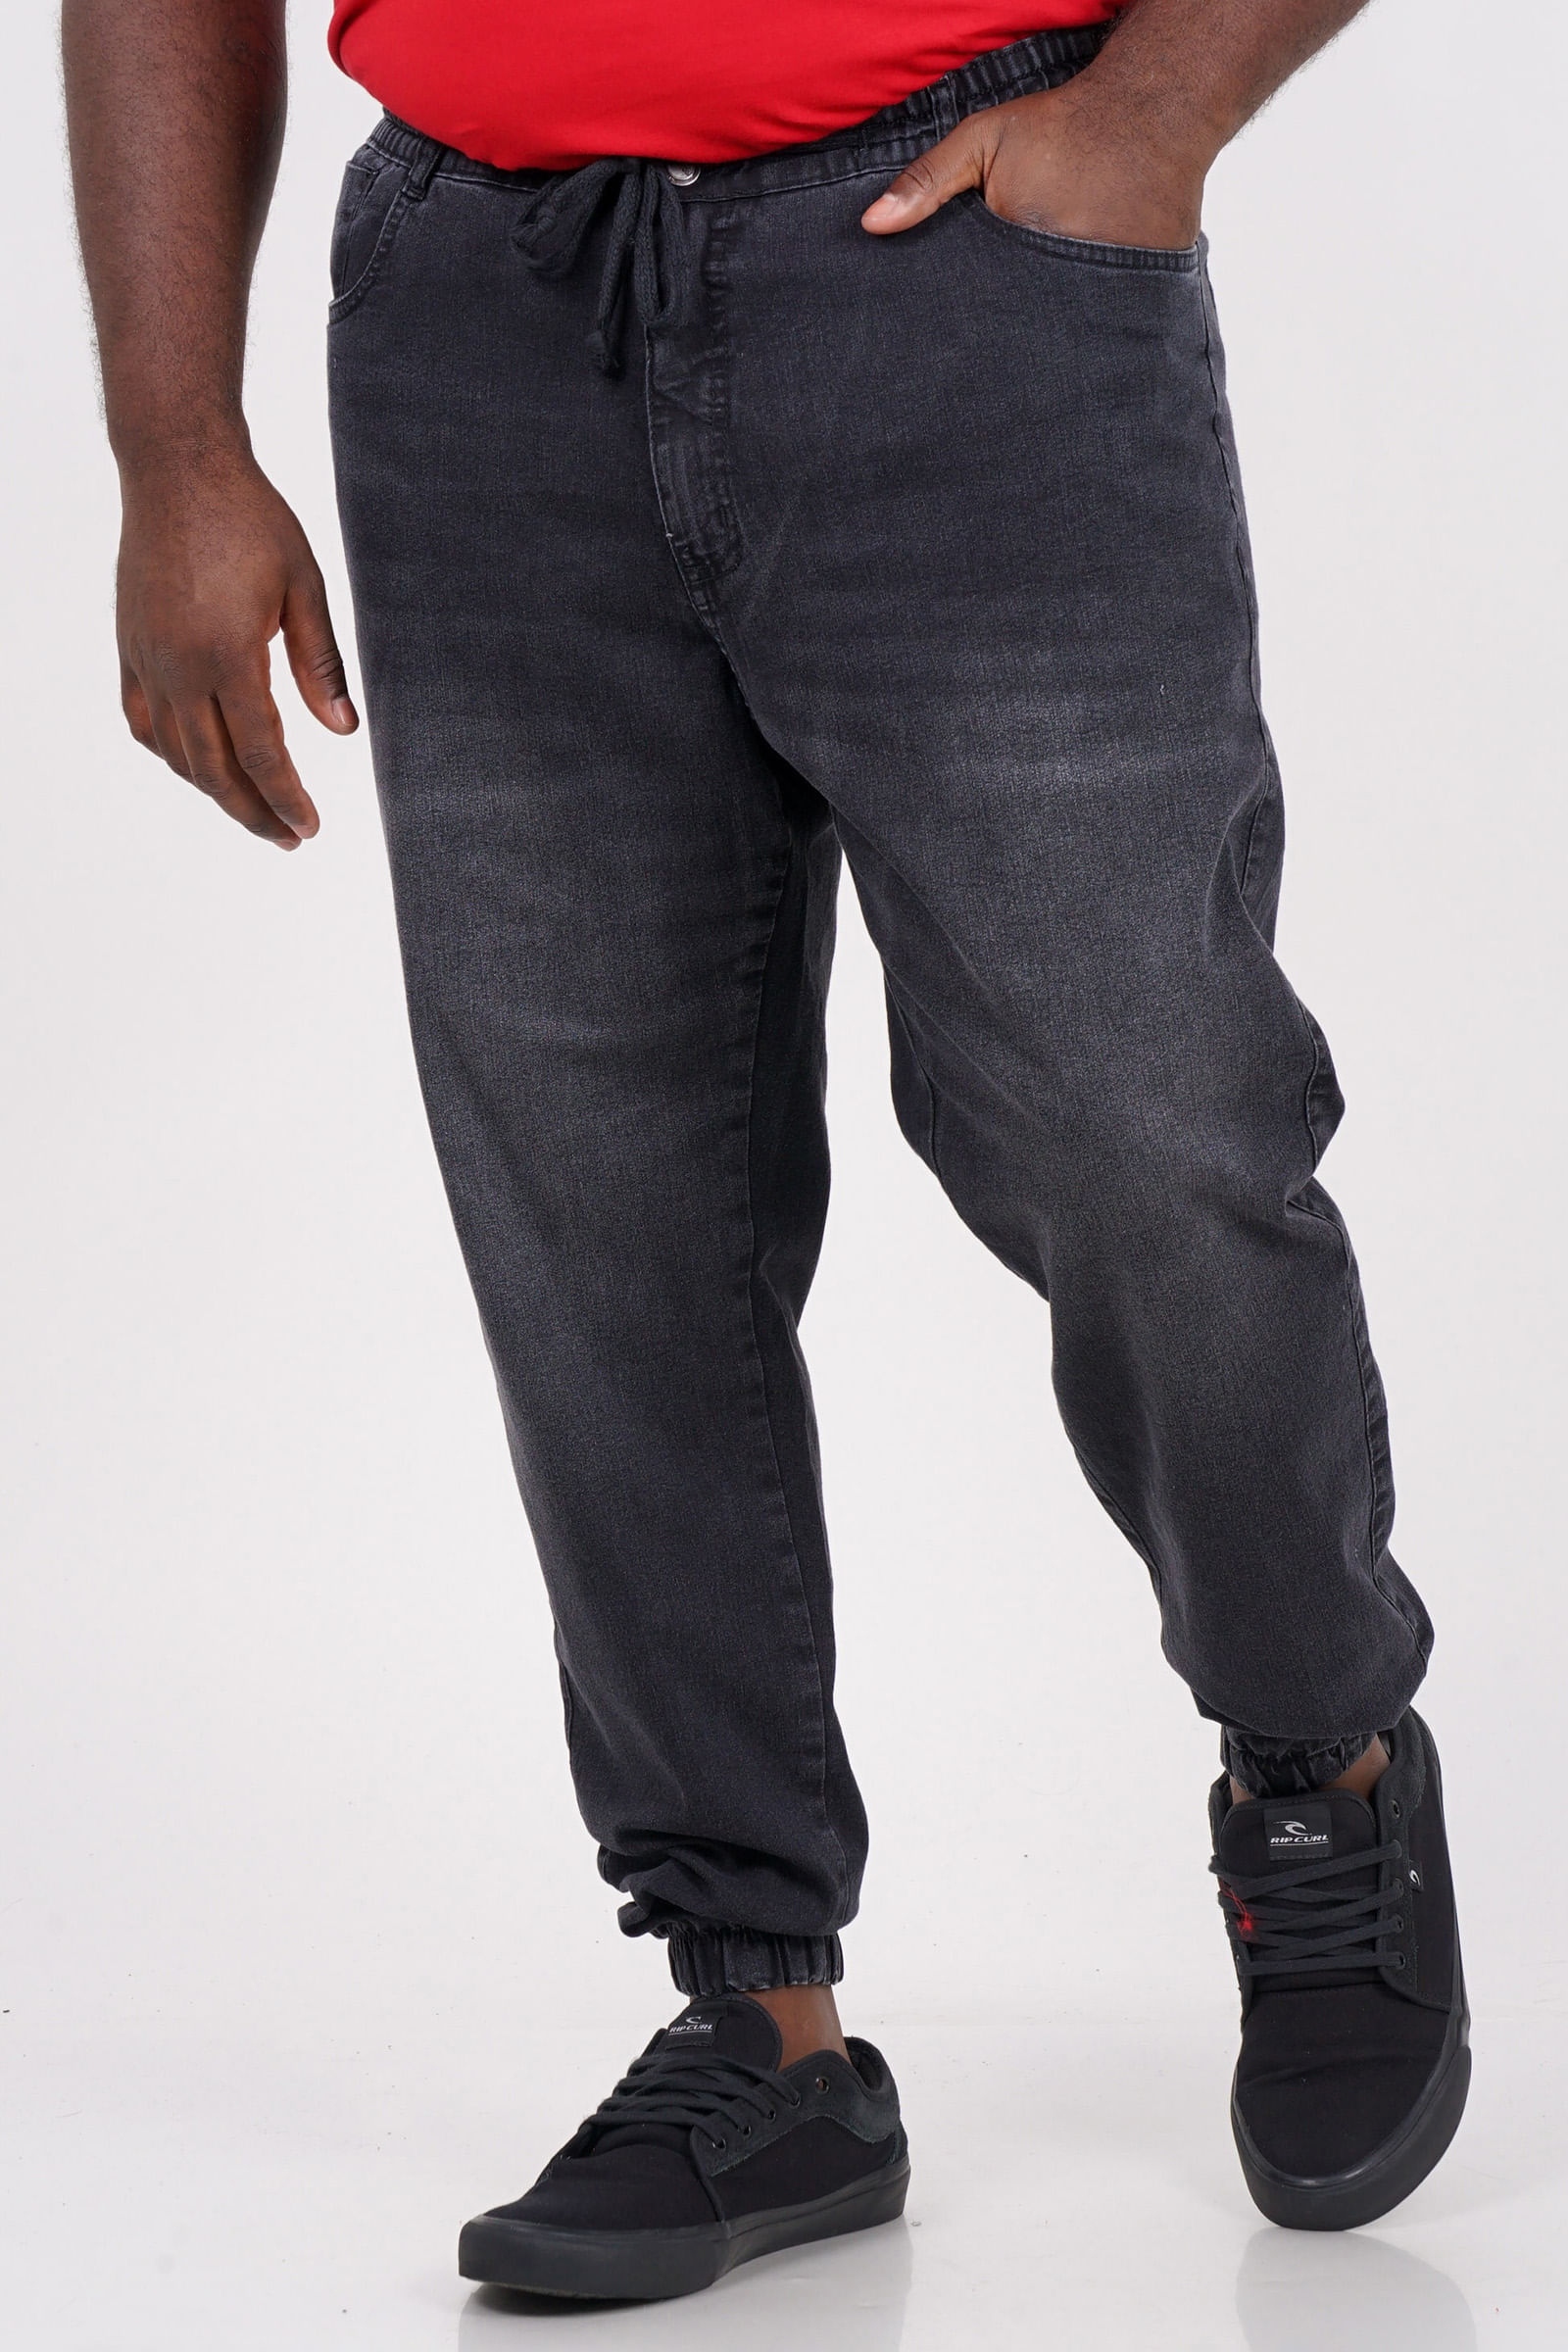 Calca-jogger-black-jeans-plus-size